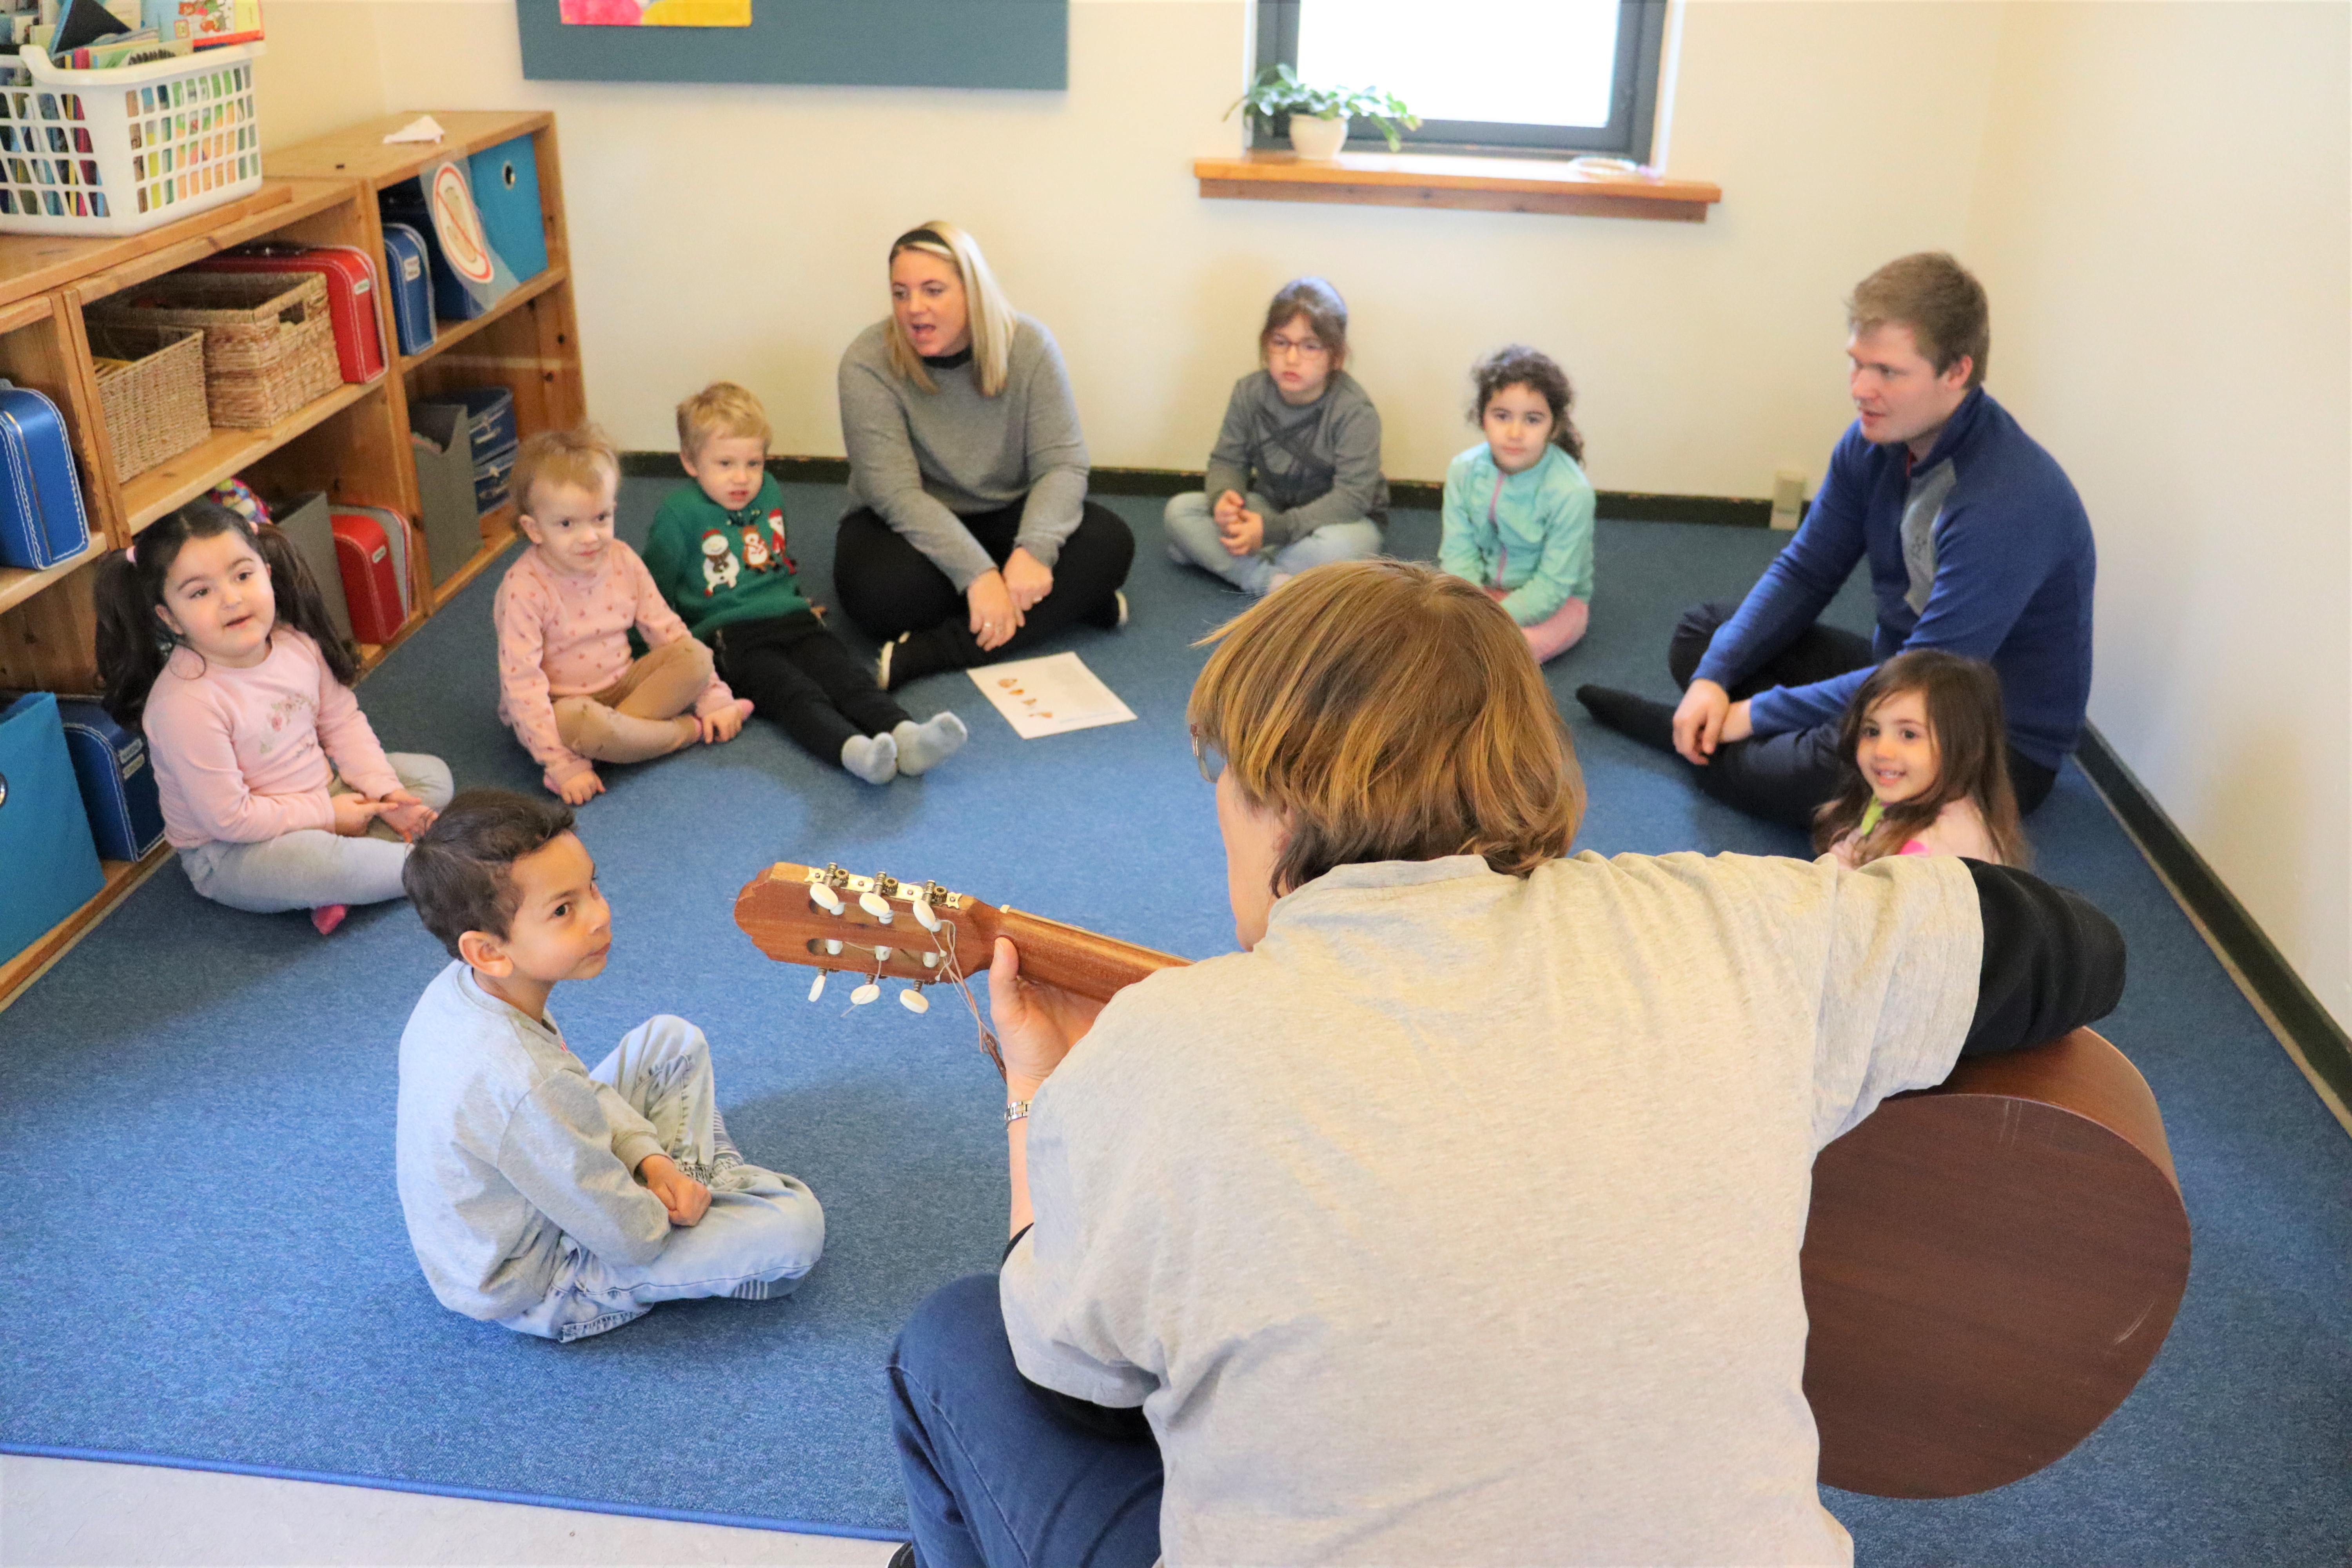 Pædagog sidder med ryggen til og spiller guitar, hvor børnene er samlet i en cirkle omkring pædagogen